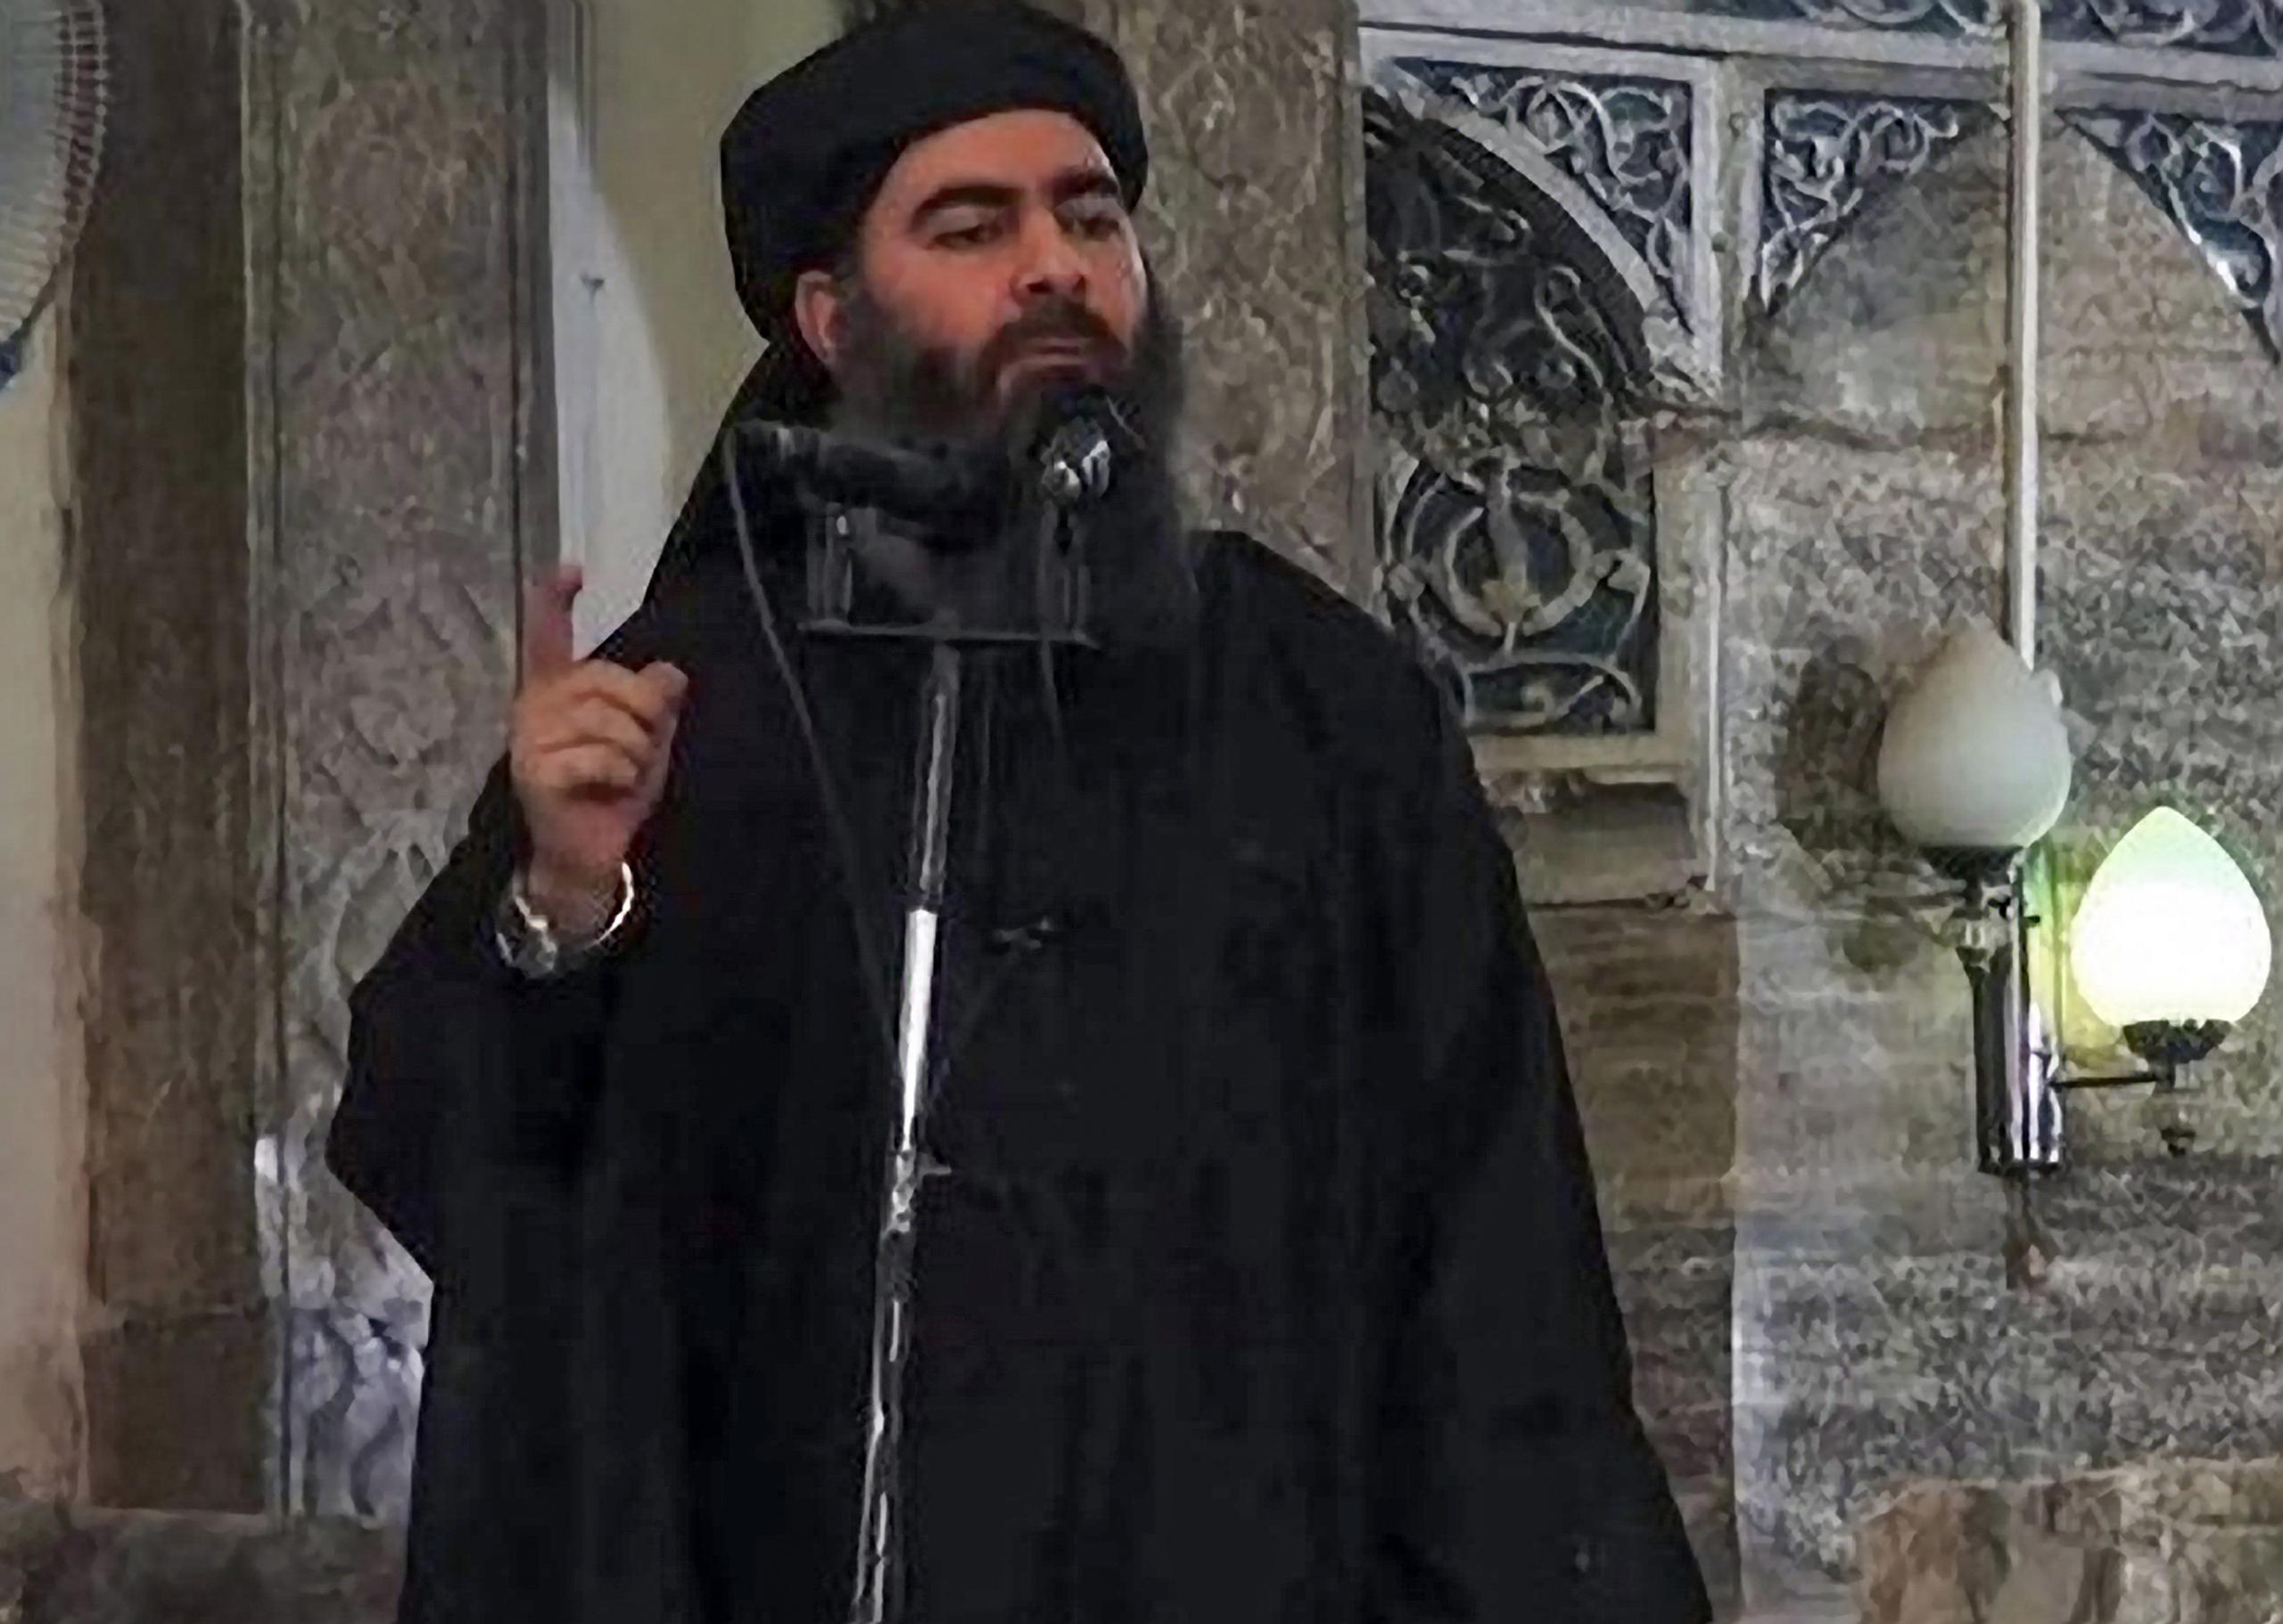 Abu Bakr al-Baghdadi, el enigmático líder del grupo Estado Islámico que presidió su guerra santa a nivel mundial y se convirtió en posiblemente el hombre más buscado del mundo, fue muerto en octubre de 2019 luego de ser blanco de un ataque de las fuerzas militares de Estados Unidos en Siria.